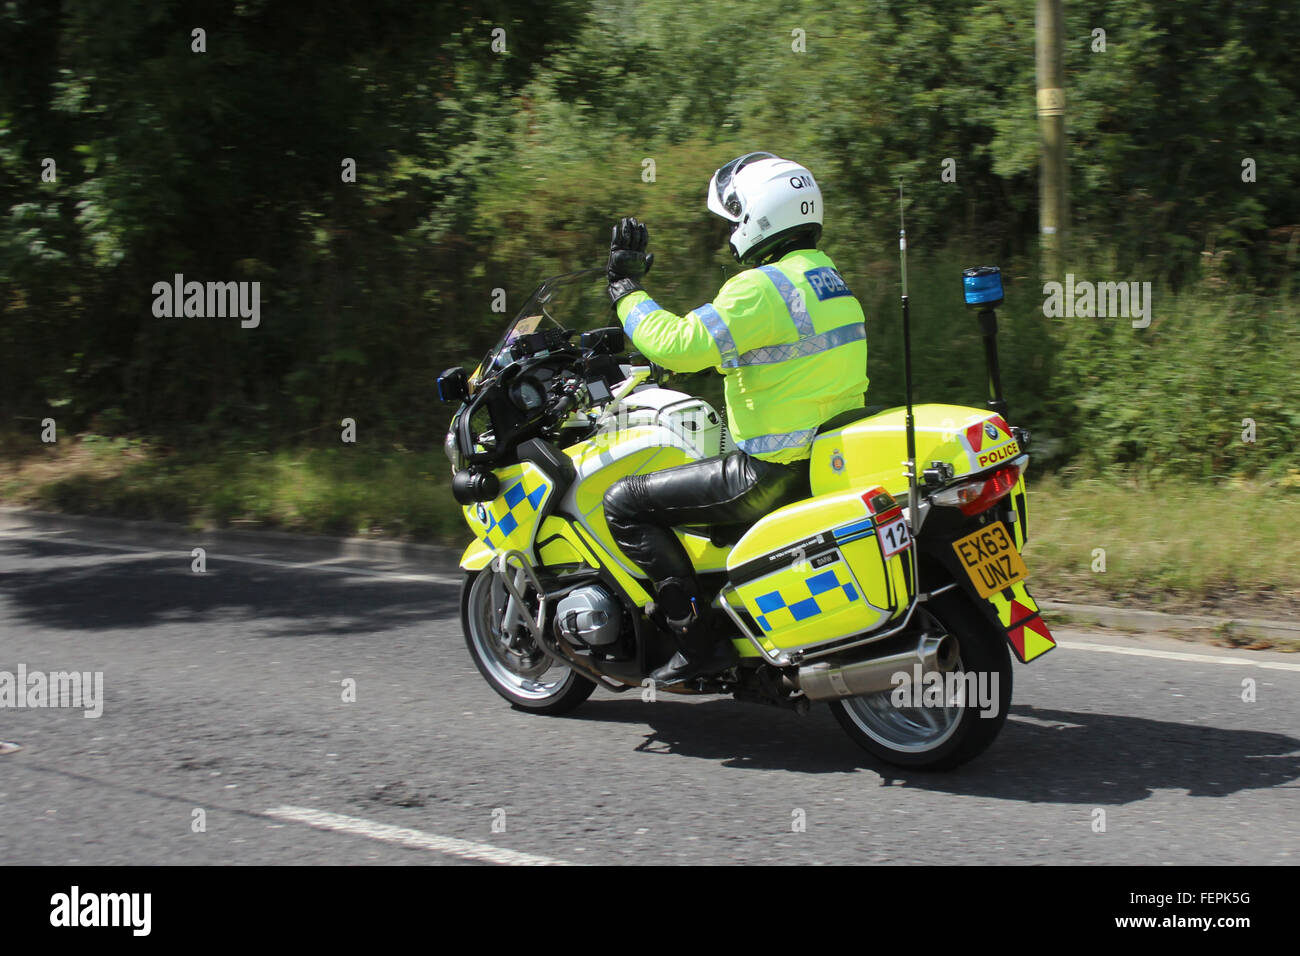 Moto de police d'essex patrol officer riding a motorcycle police le long d'une route en 2014. Banque D'Images